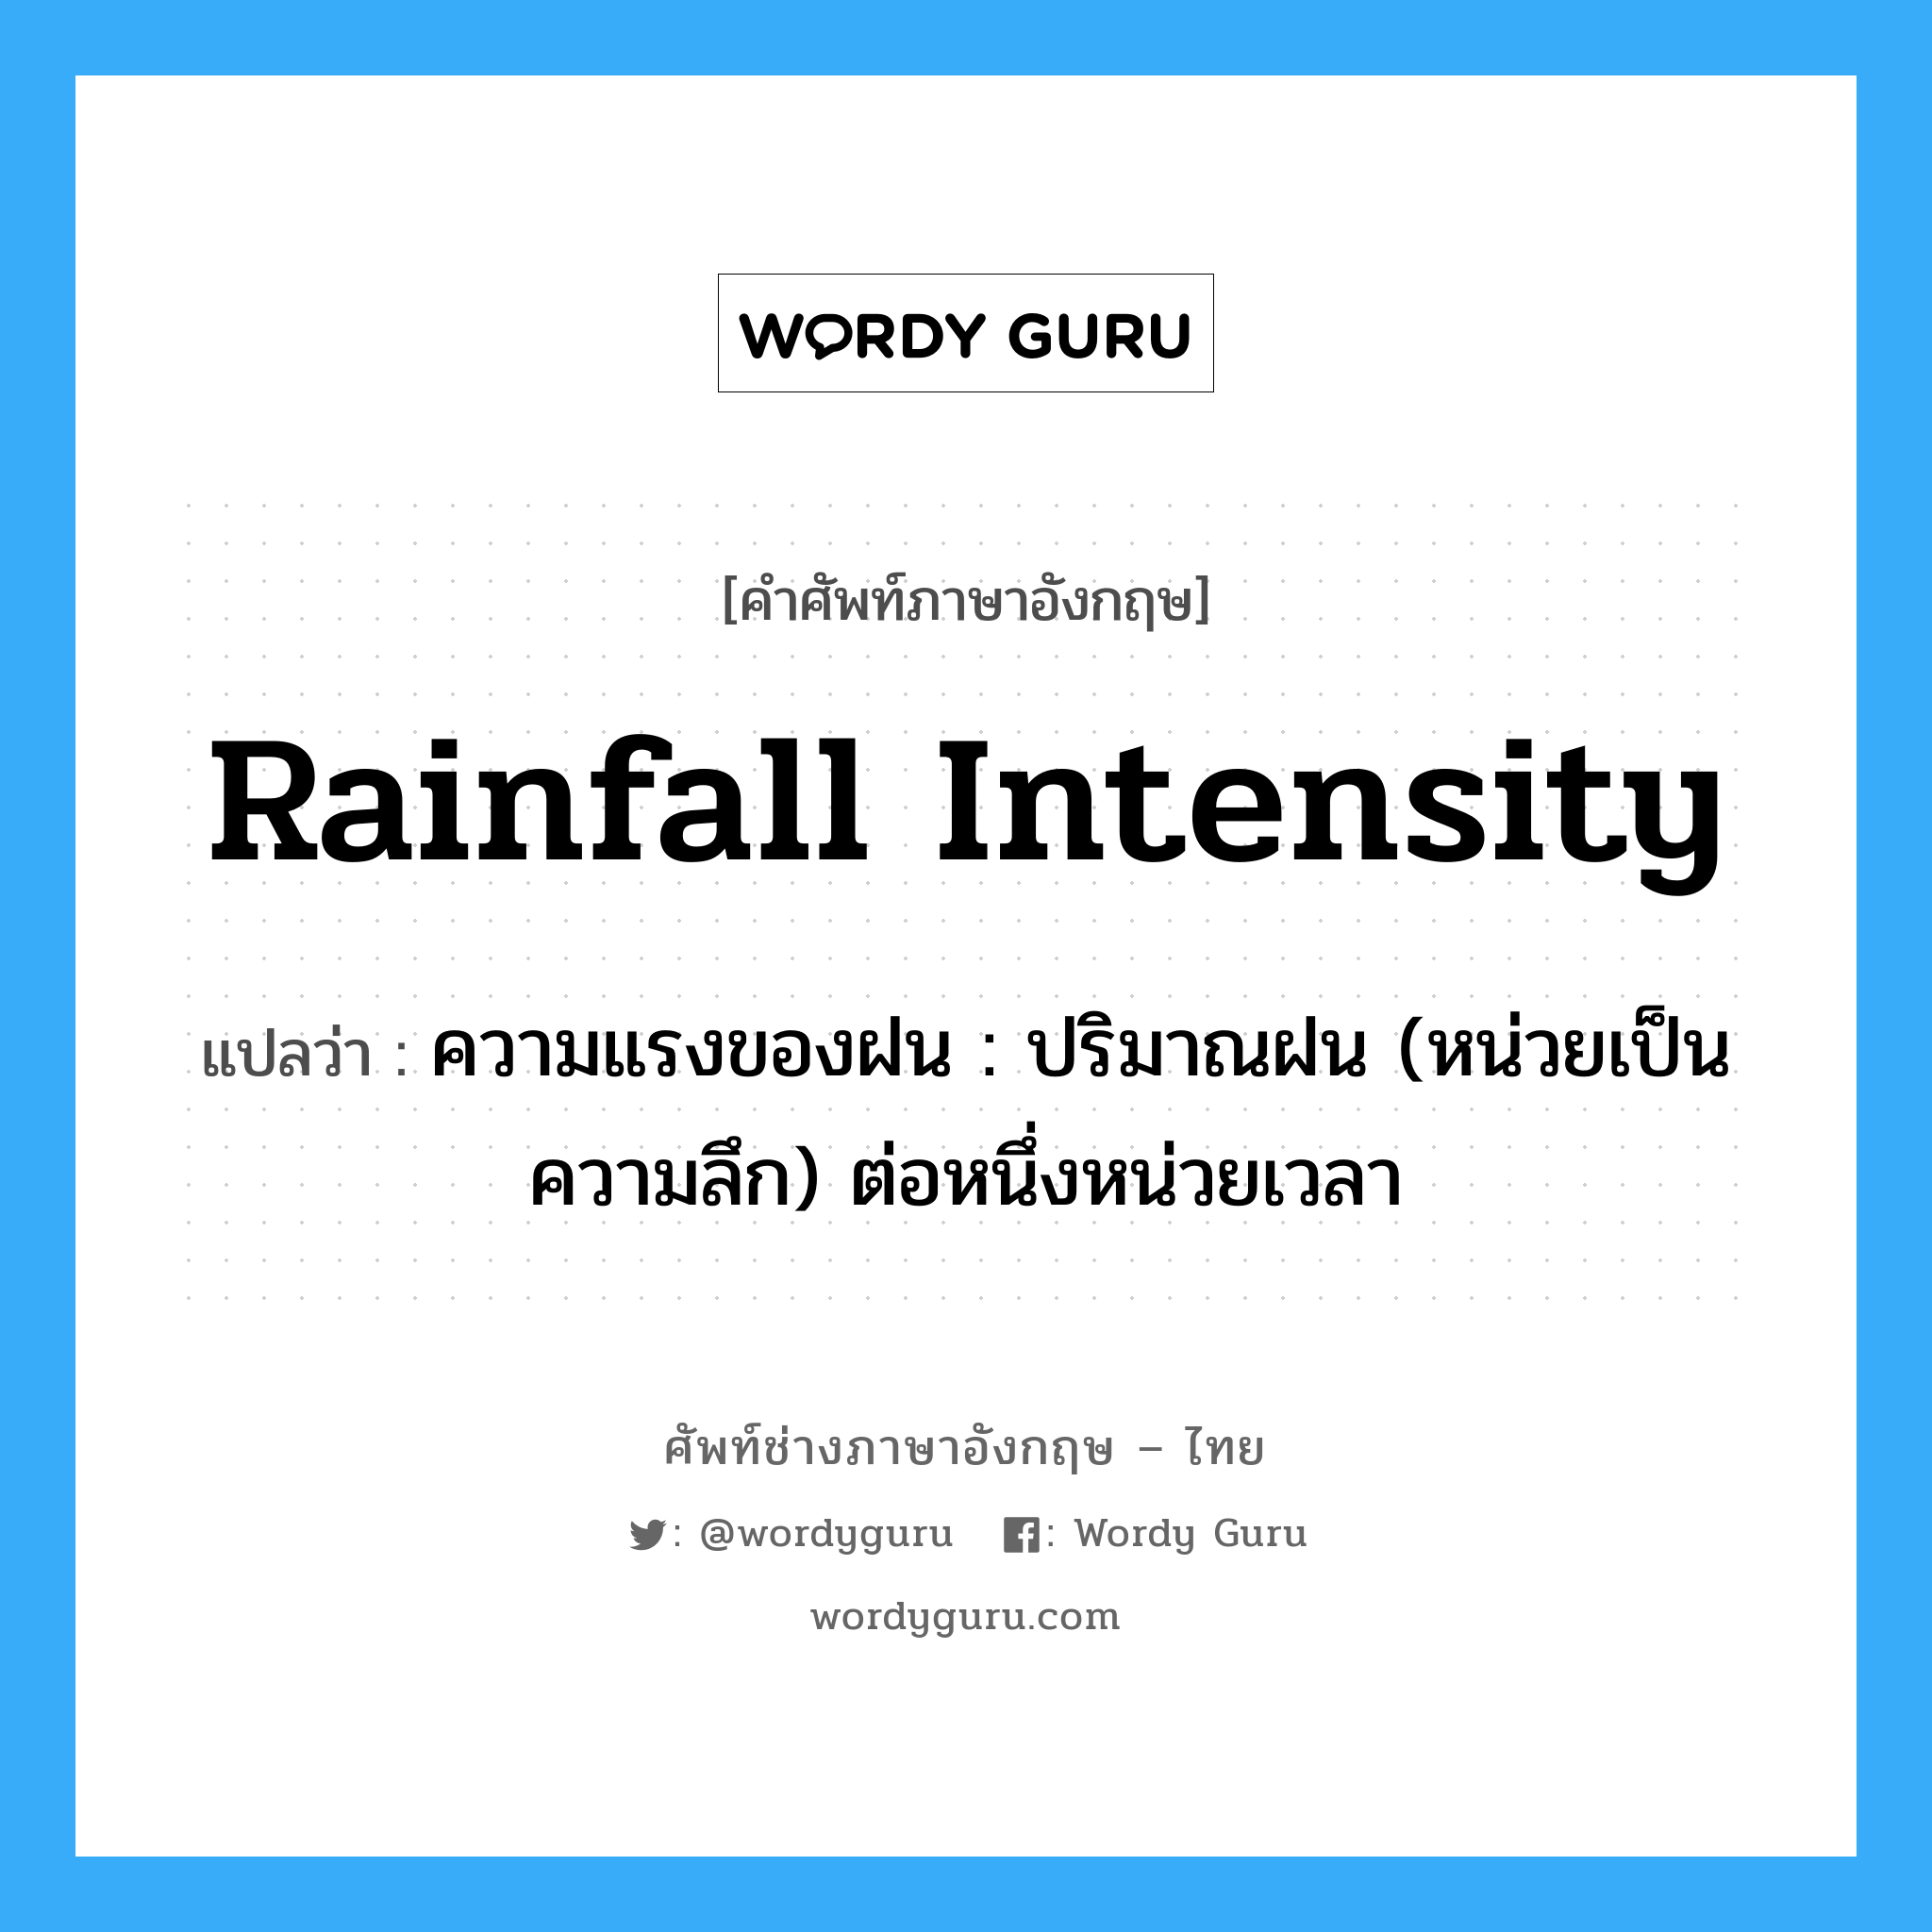 rainfall intensity แปลว่า?, คำศัพท์ช่างภาษาอังกฤษ - ไทย rainfall intensity คำศัพท์ภาษาอังกฤษ rainfall intensity แปลว่า ความแรงของฝน : ปริมาณฝน (หน่วยเป็นความลึก) ต่อหนึ่งหน่วยเวลา